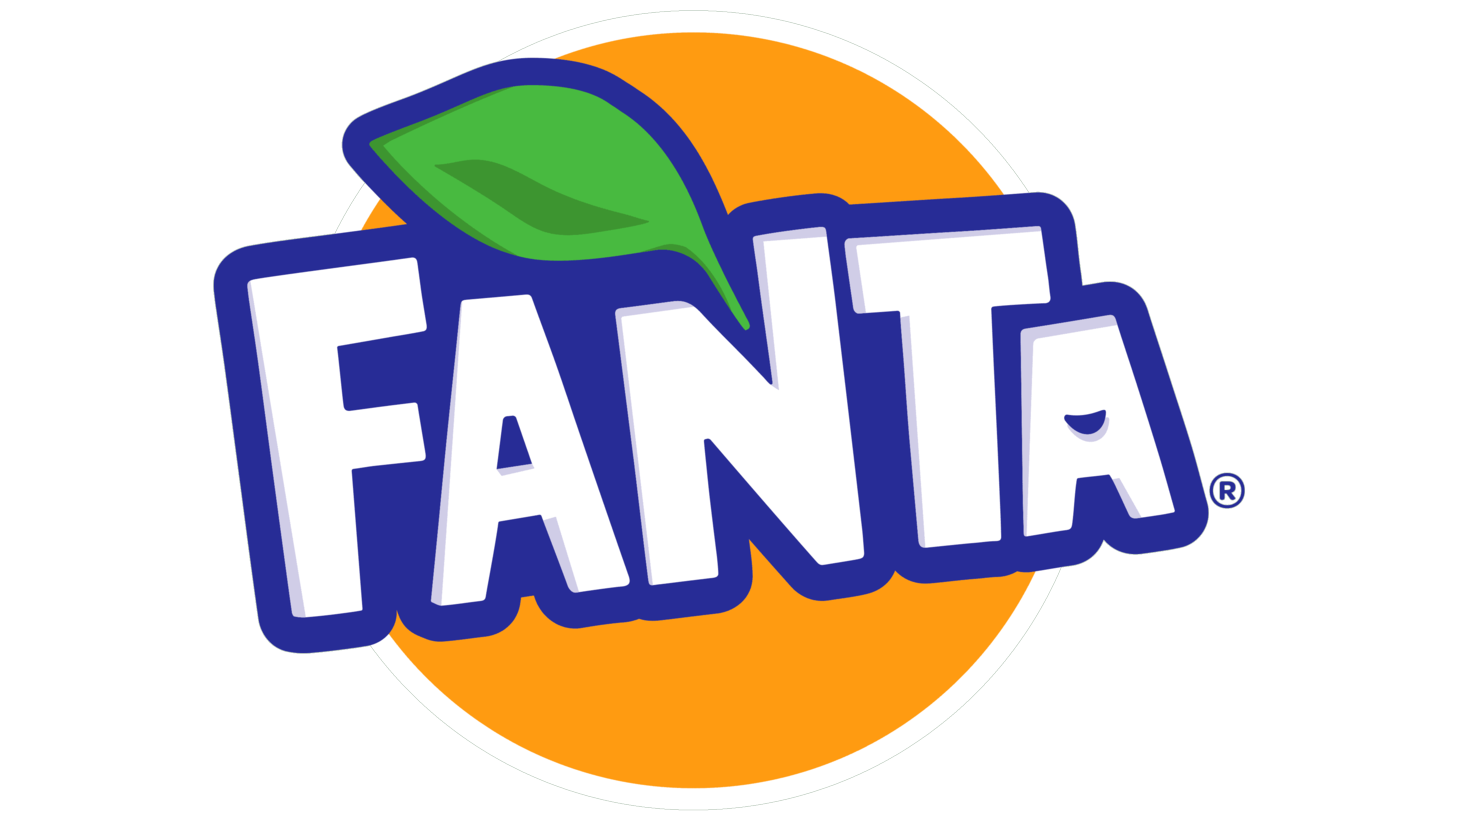 Fanta sign 2016 present